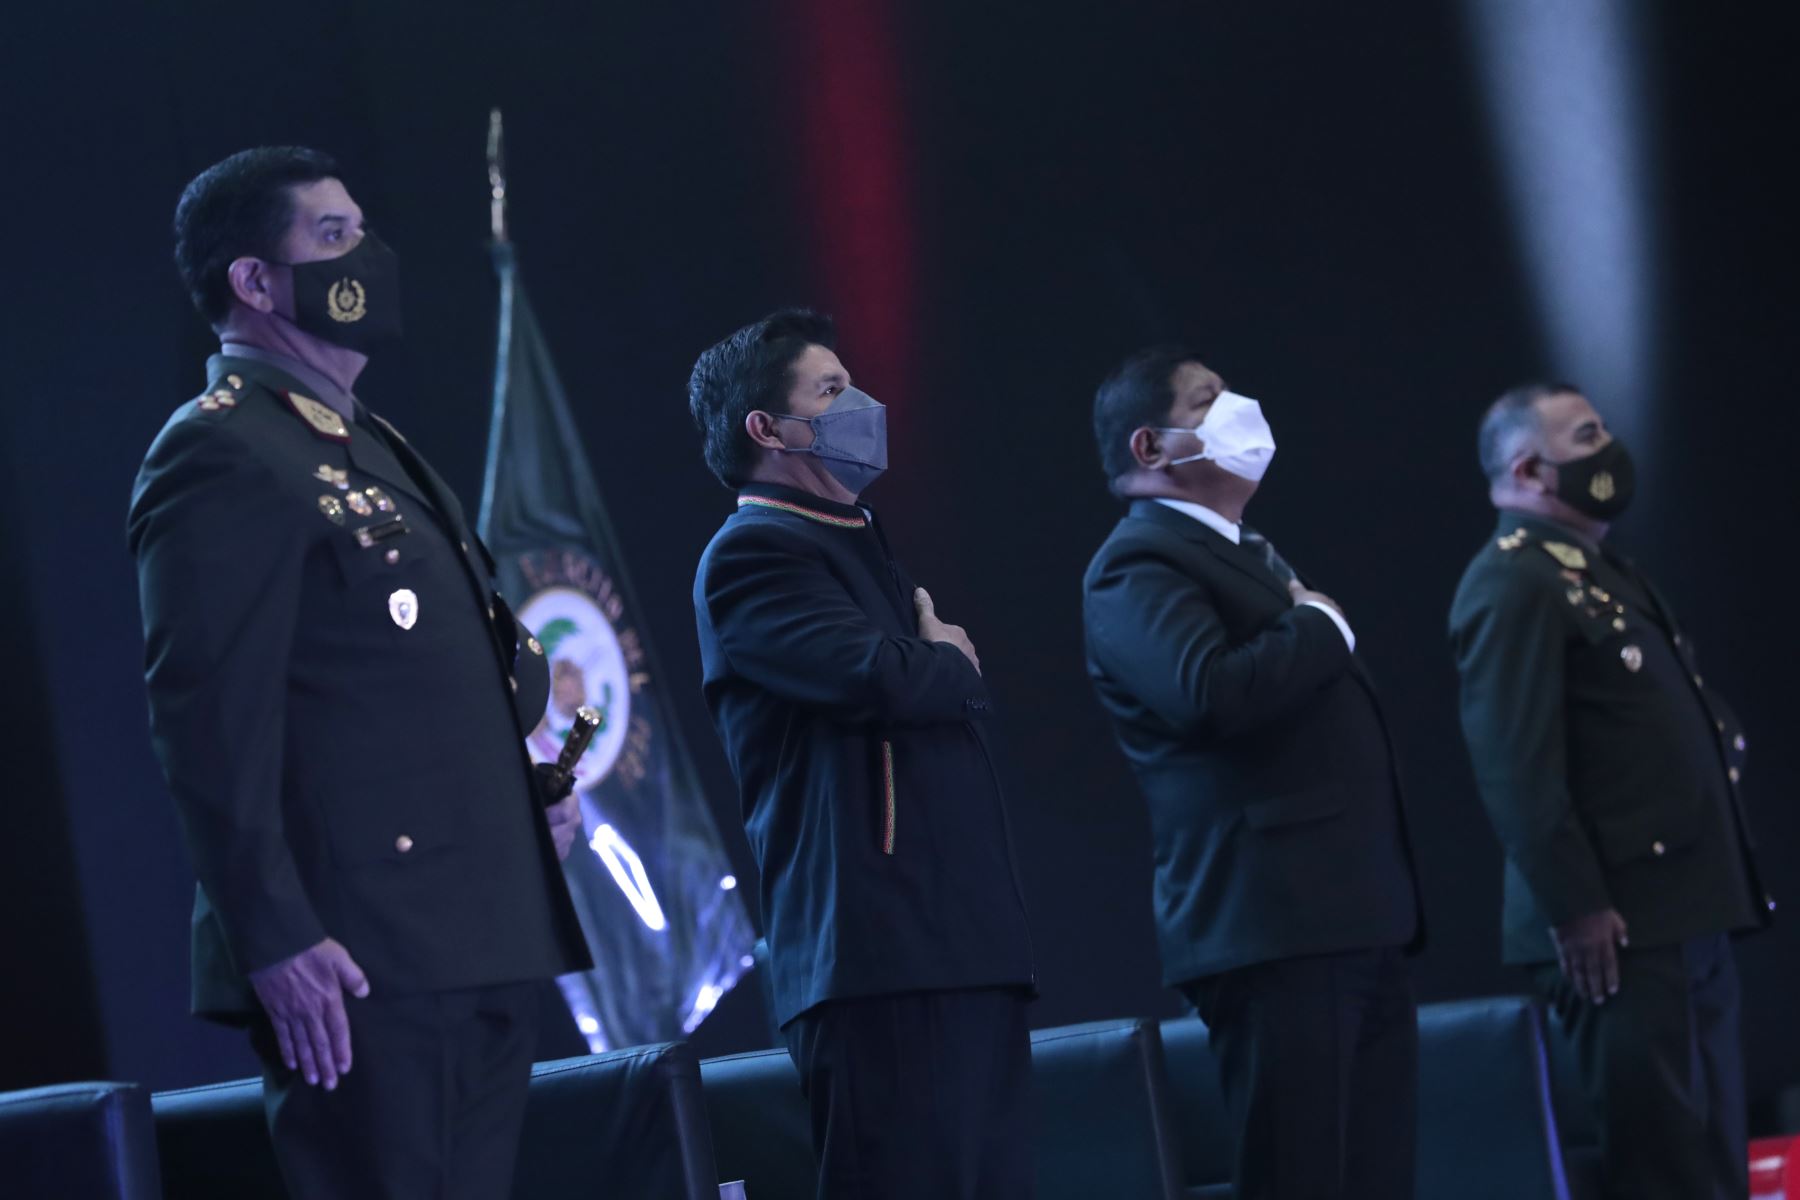 Presidente Pedro Castillo, inaugura el VIII Salón Internacional de Tecnología para la Defensa y Prevención de Desastres- SITDEF PERÚ 2021. Foto: ANDINA/ Prensa Presidencia